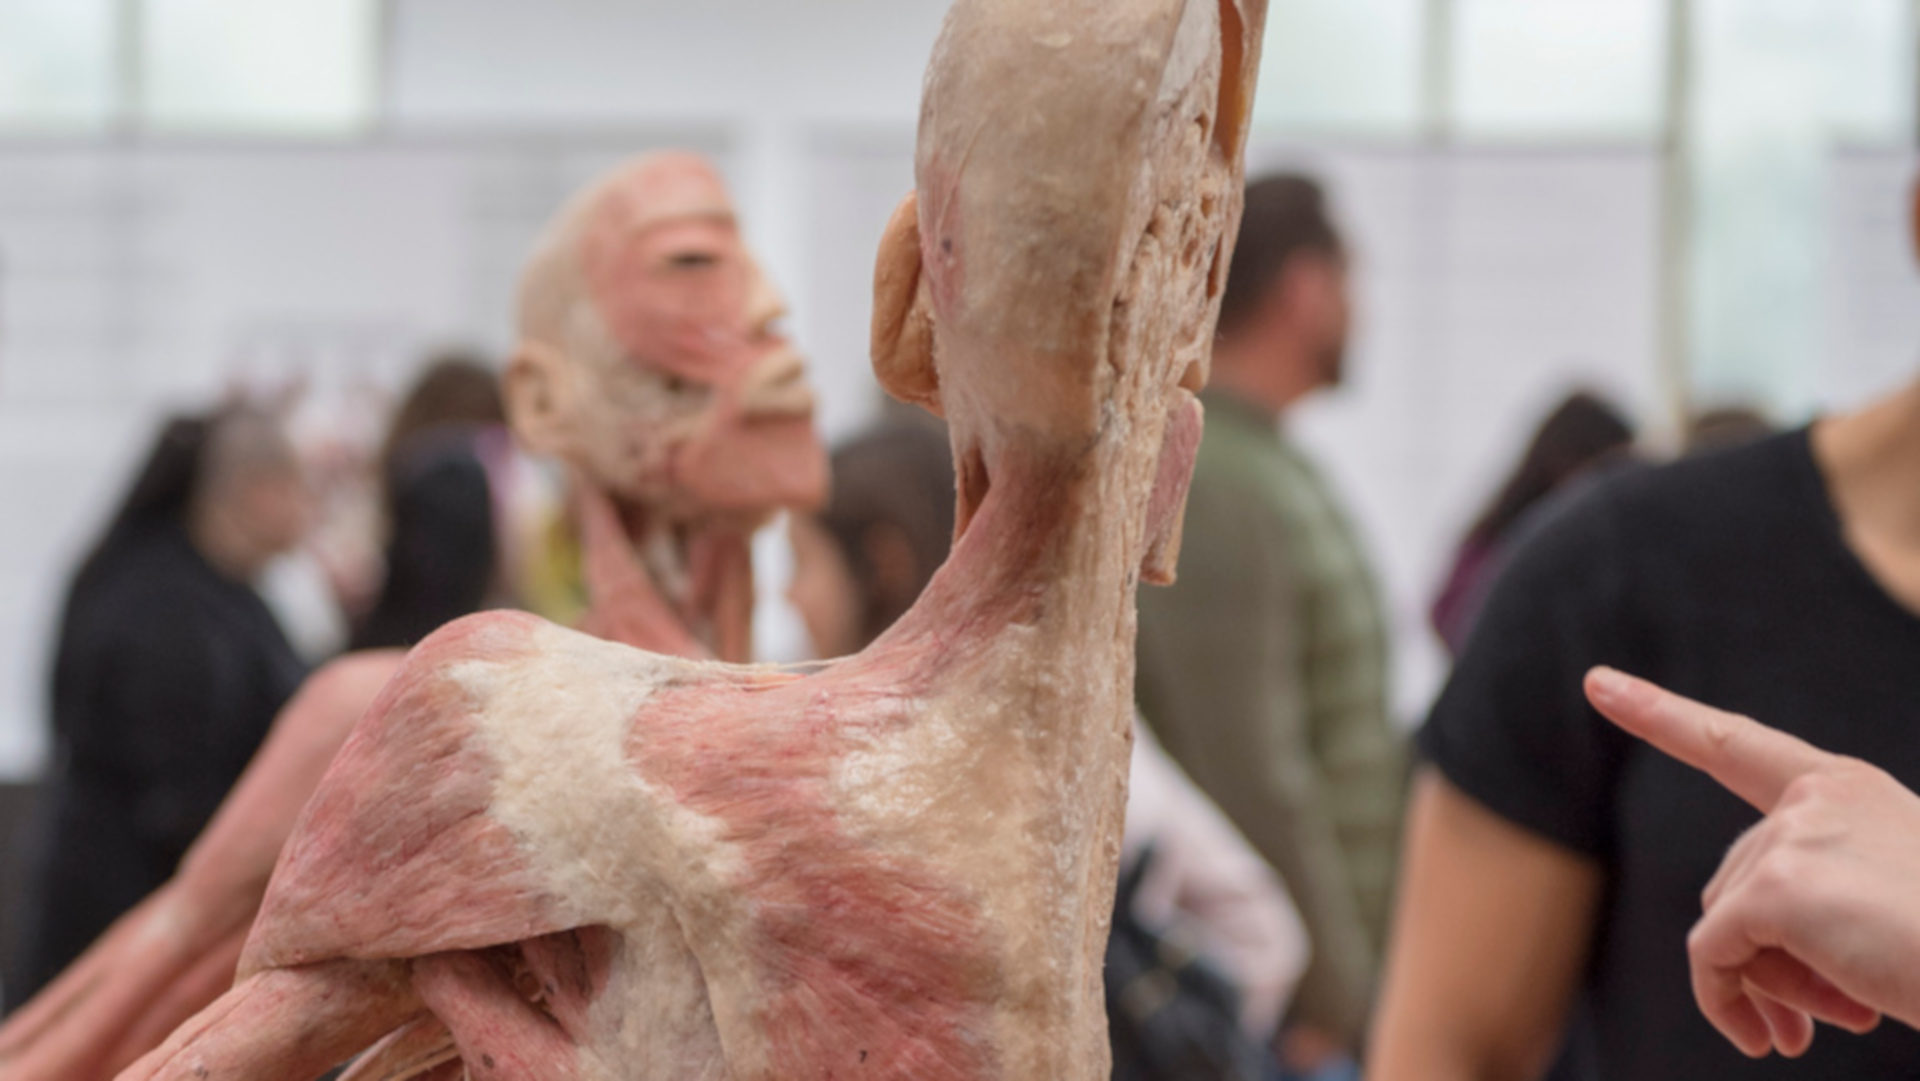 Plastinierte menschliche Koerperteile in der Ausstellung "Bodies Exhibition" in Bern